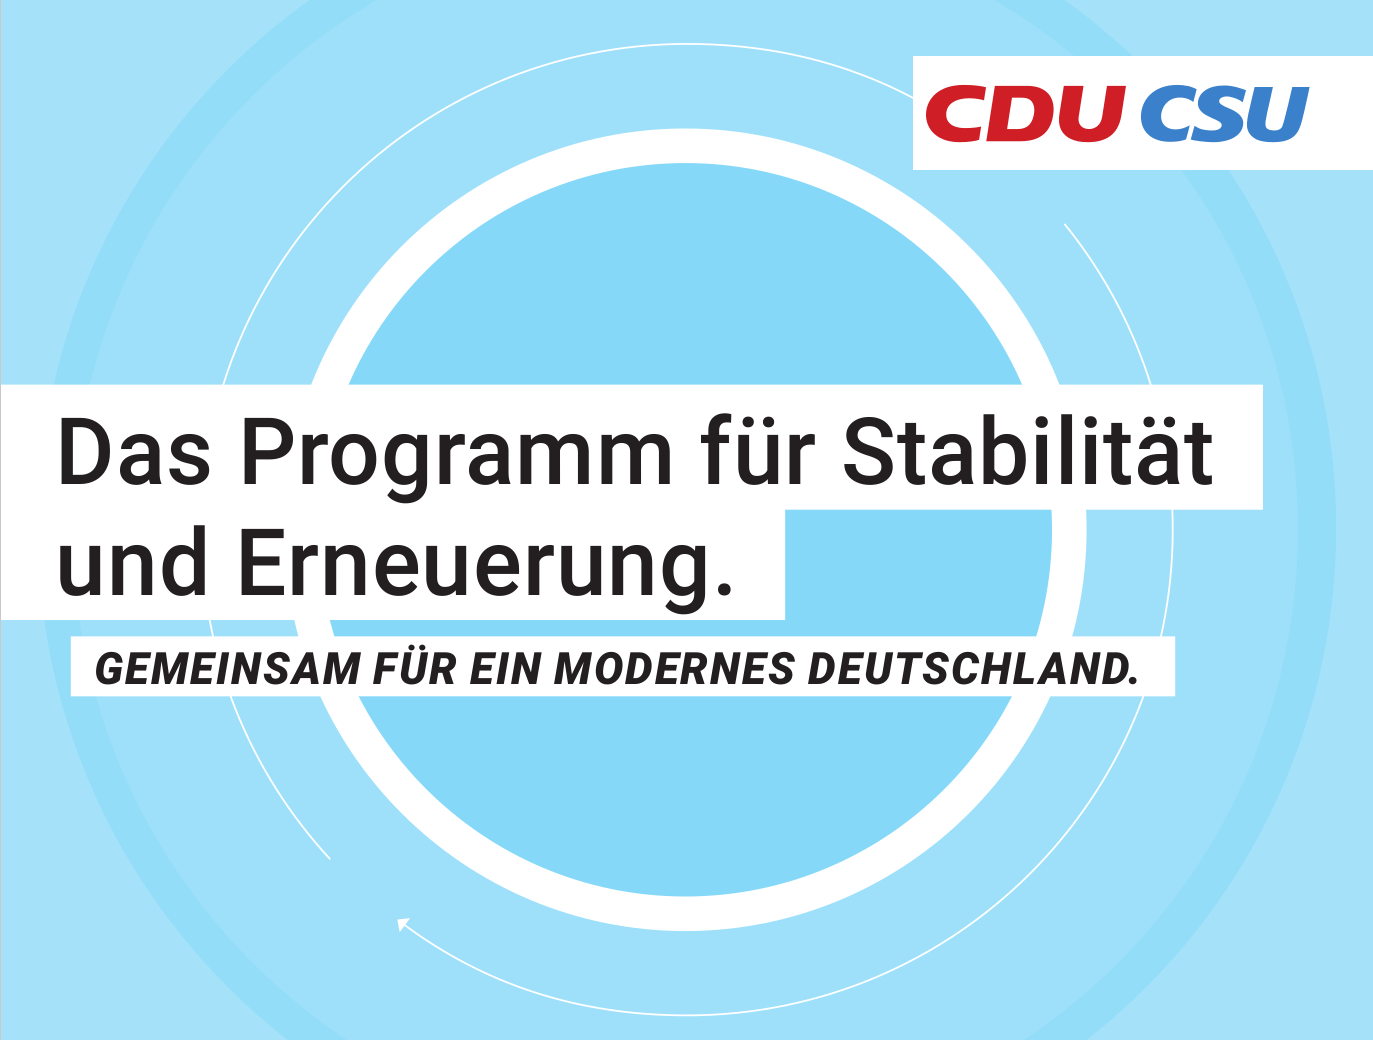 Wahlprogramm der Union (CDU CSU) für die Bundestagswahl